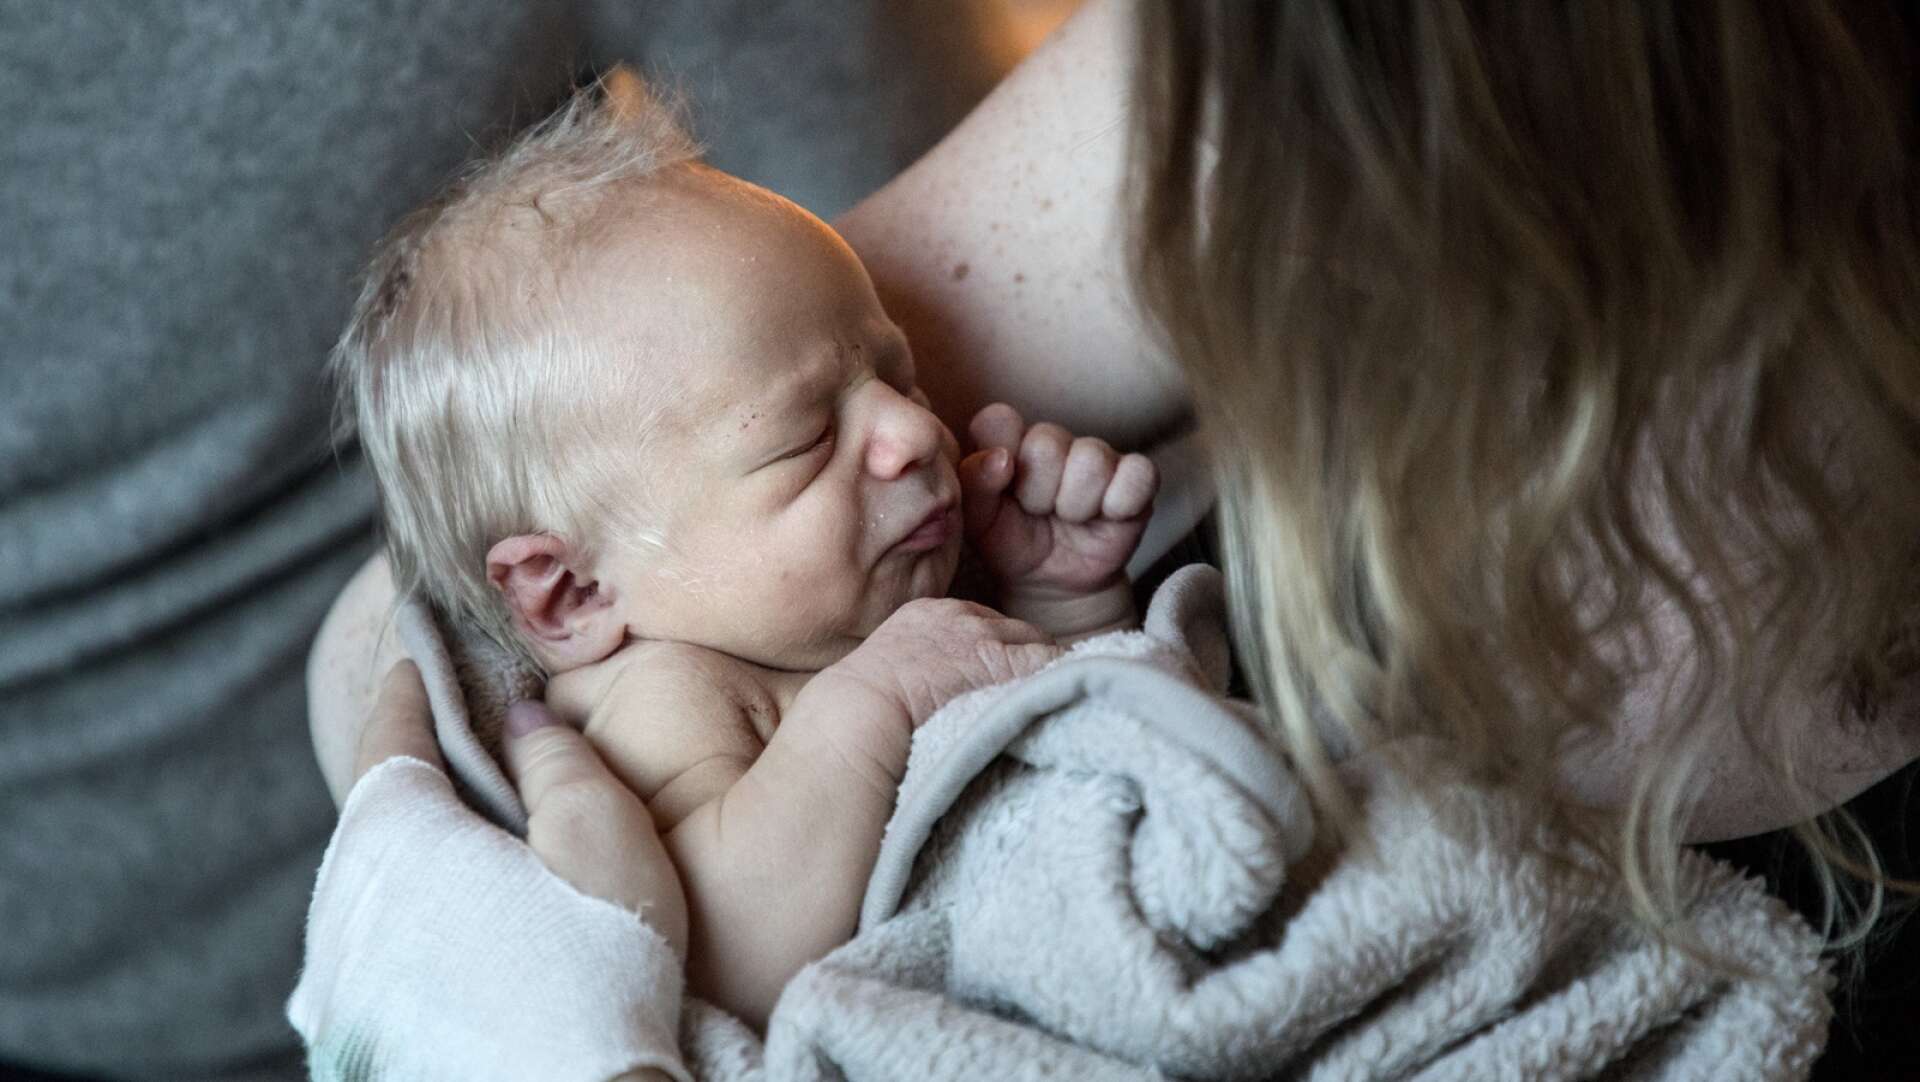 ARKIV 20180103En nyfödd baby.Foto: Christine Olsson / TT / Kod 10430